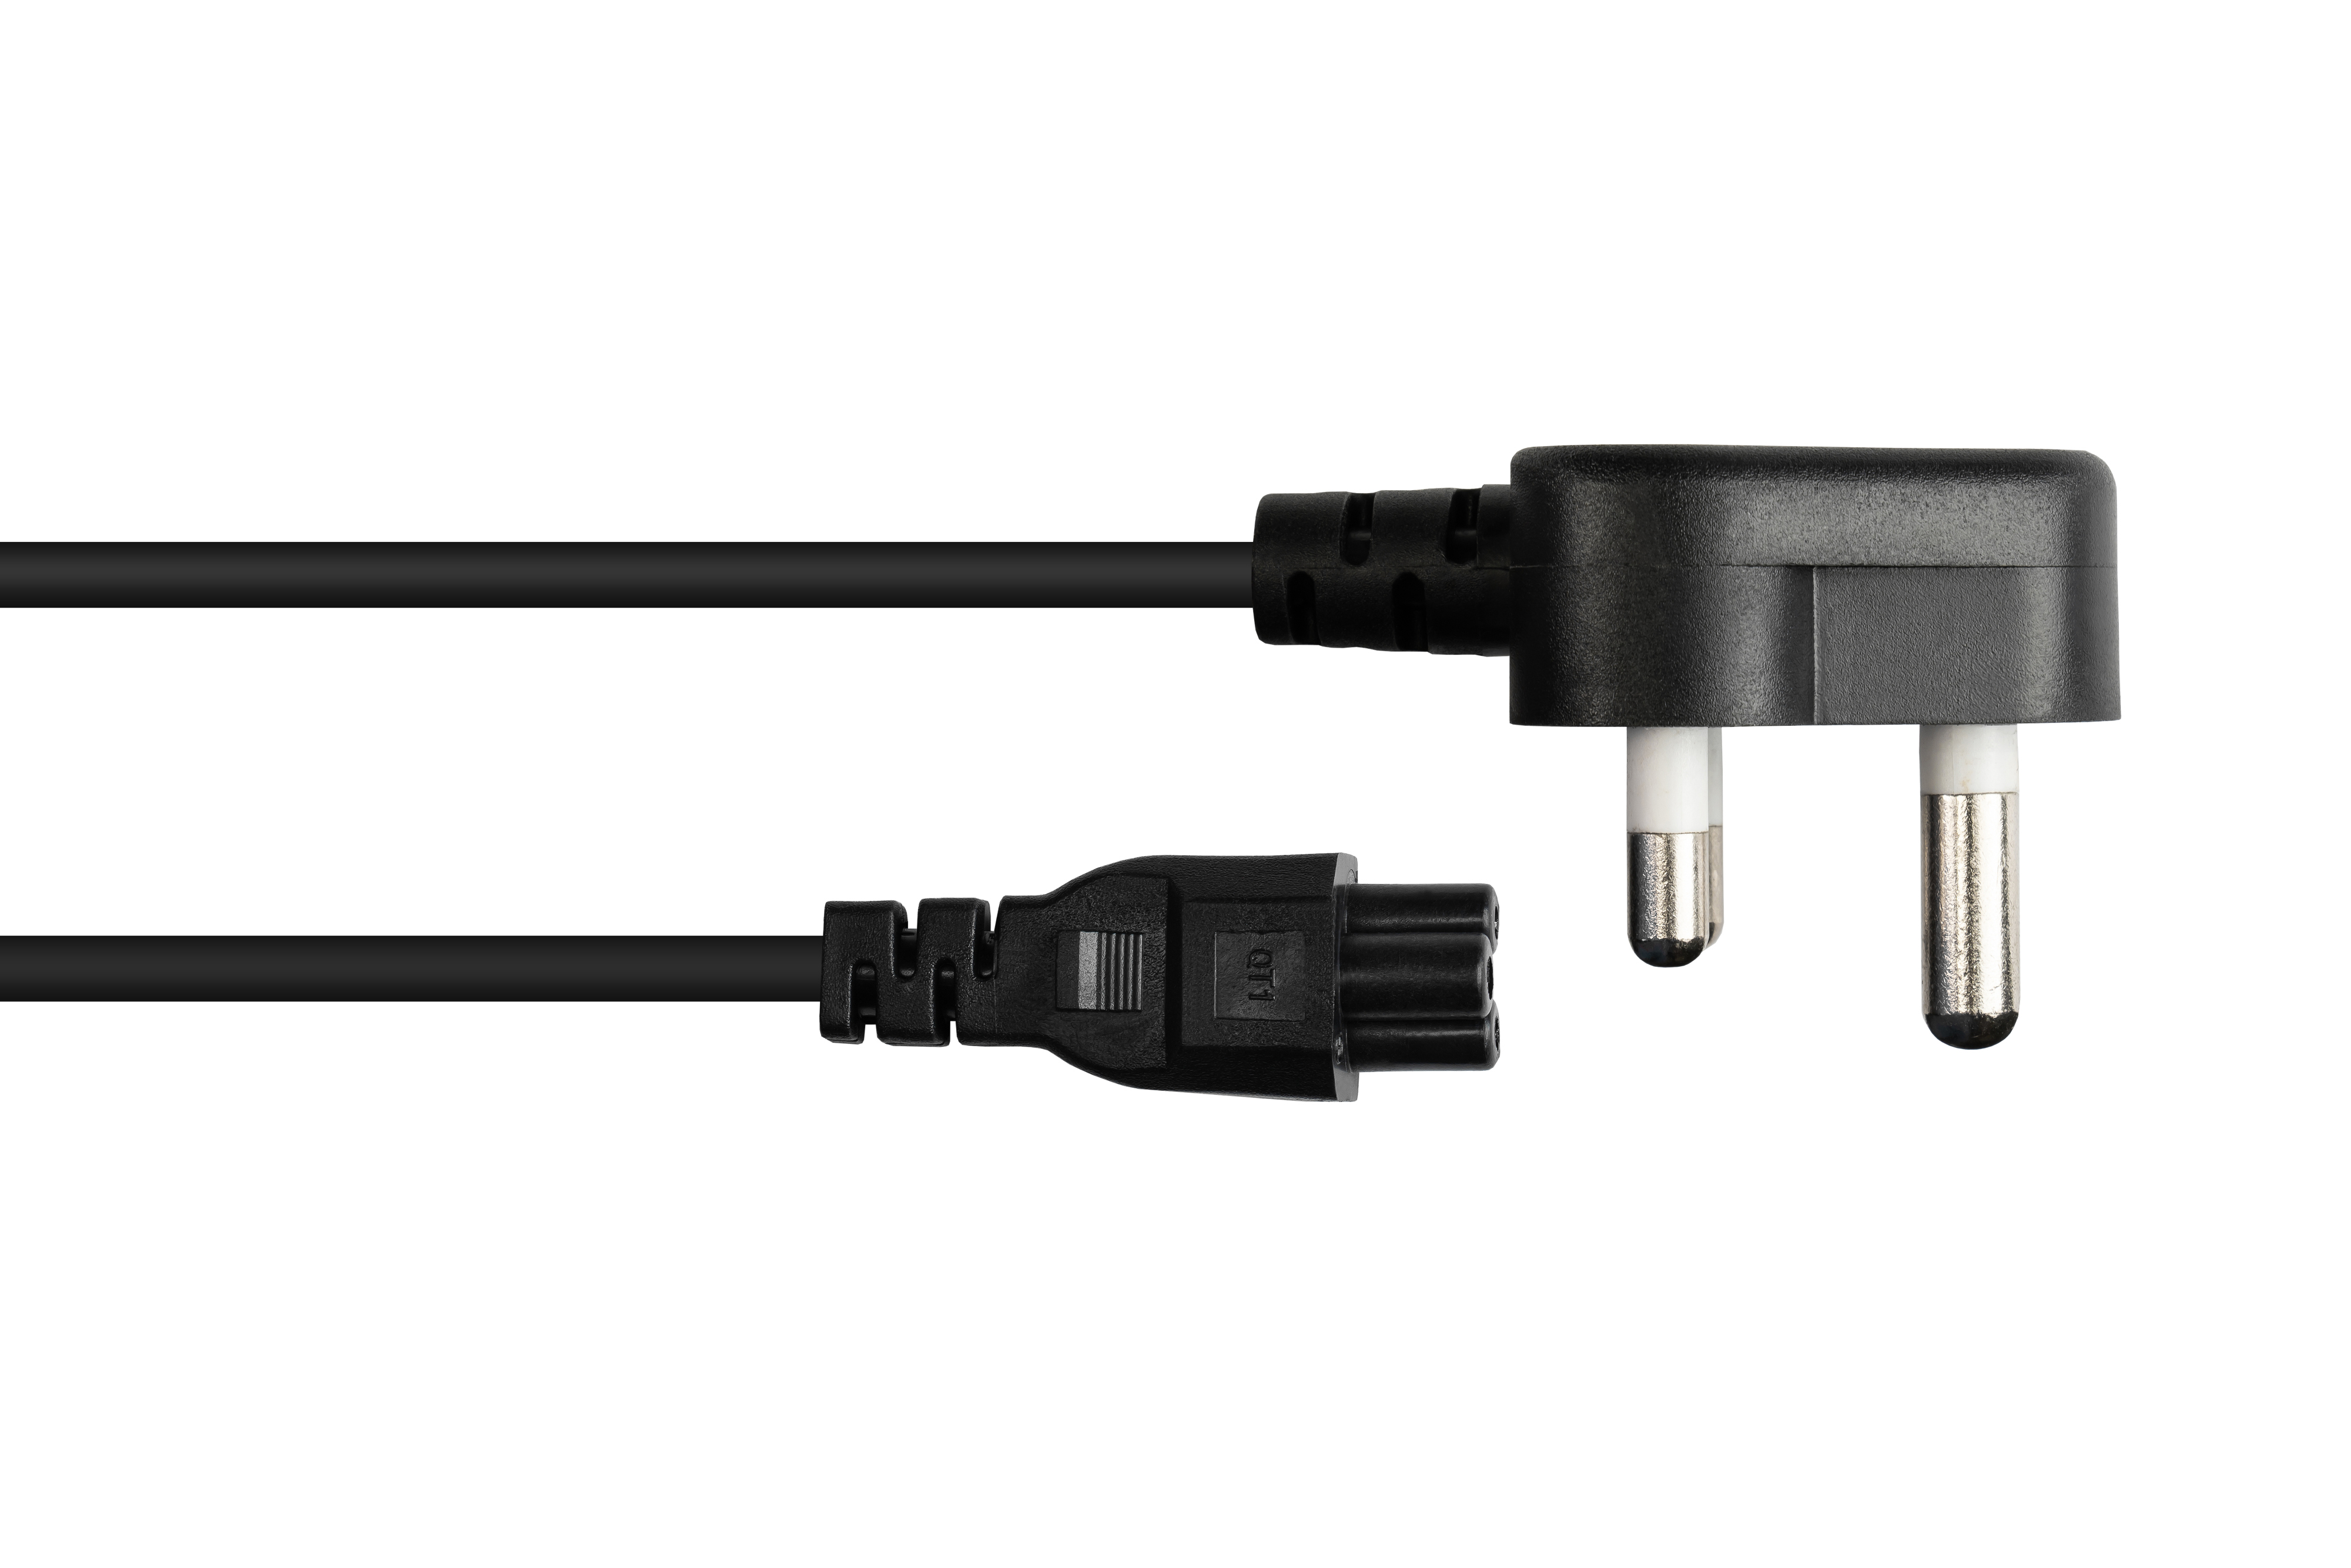 GOOD CONNECTIONS Südafrika Netz-Stecker M (SANS für Typ Notebook, 164-1) C5 mm² Stromkabel, 0,75 schwarz, schwarz an